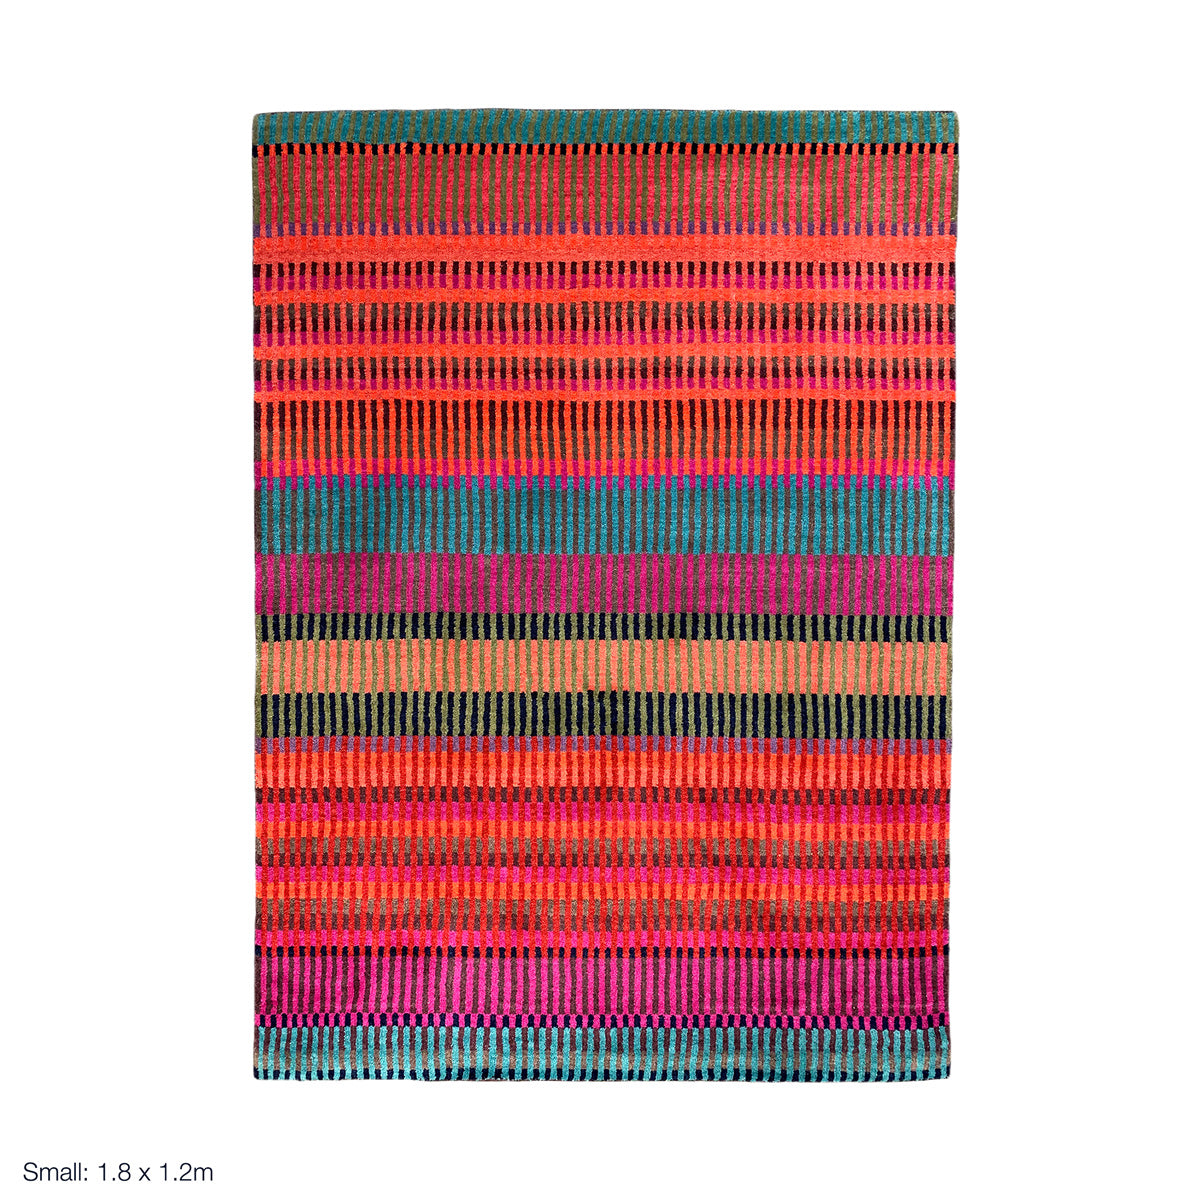 luxury rug, geometric rug, modern rug, wool rug, red rug, designer rugs, colourful rug